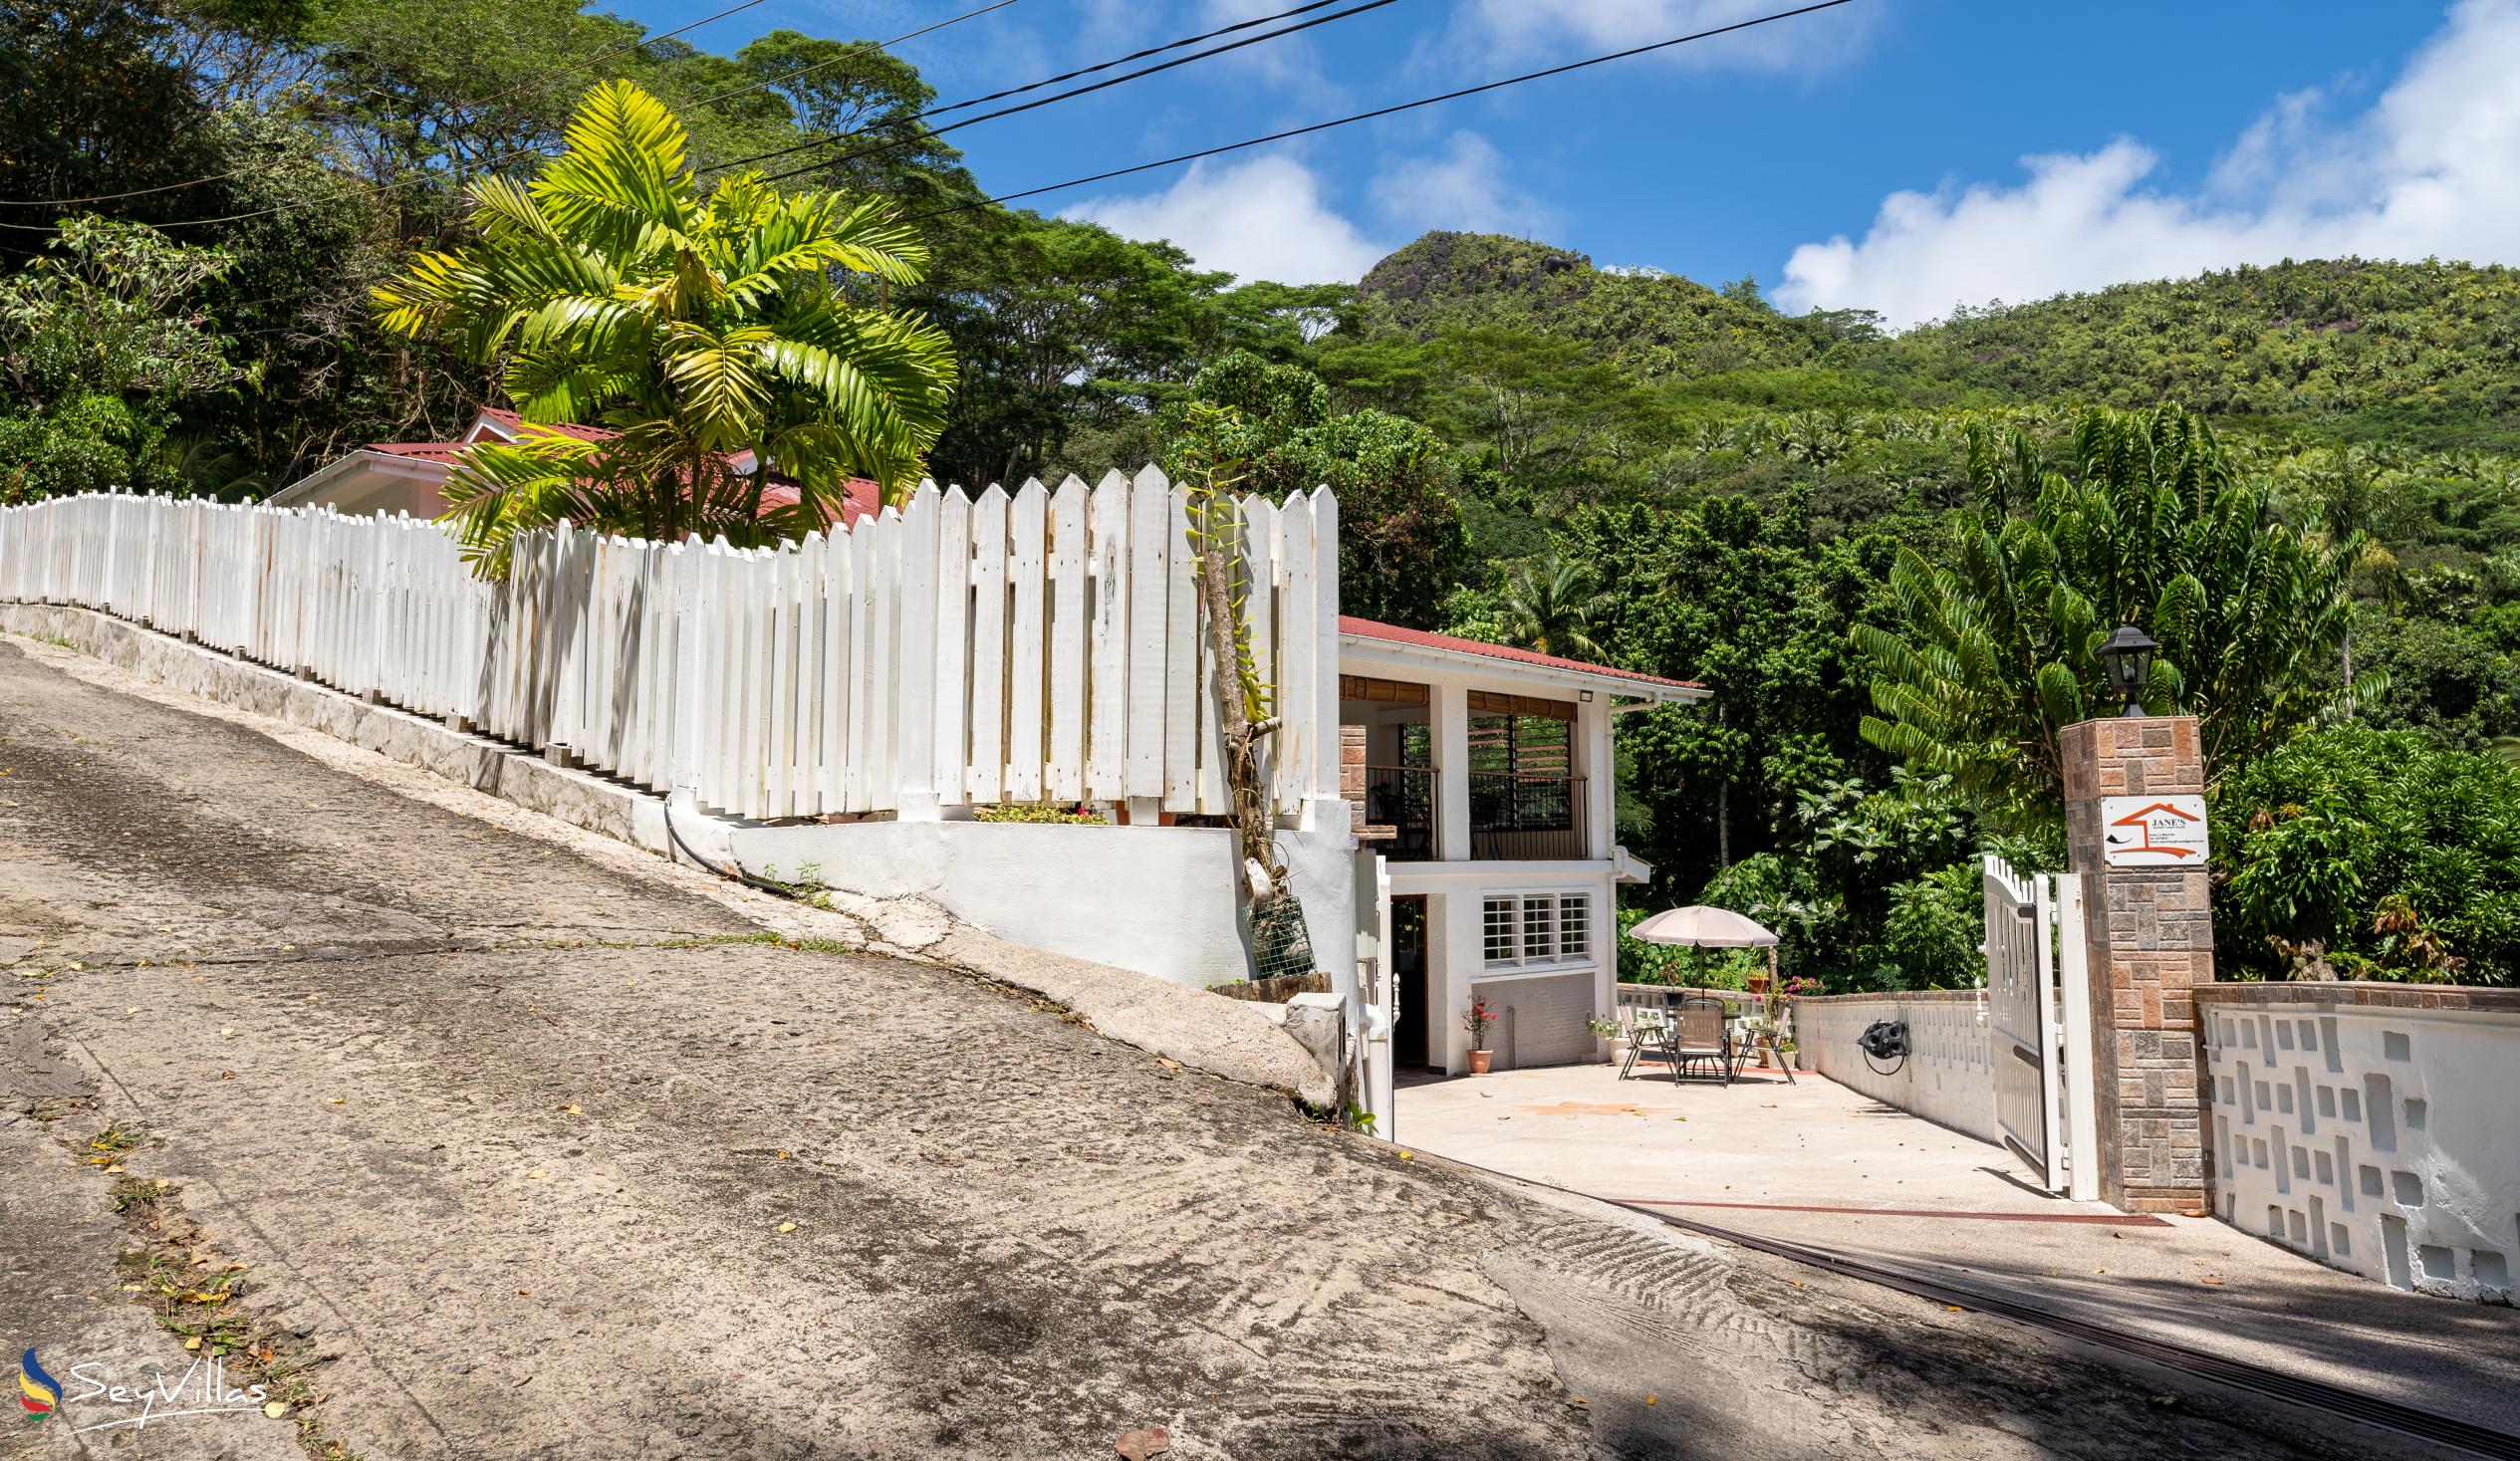 Foto 5: Jane's Serenity Guesthouse - Extérieur - Mahé (Seychelles)